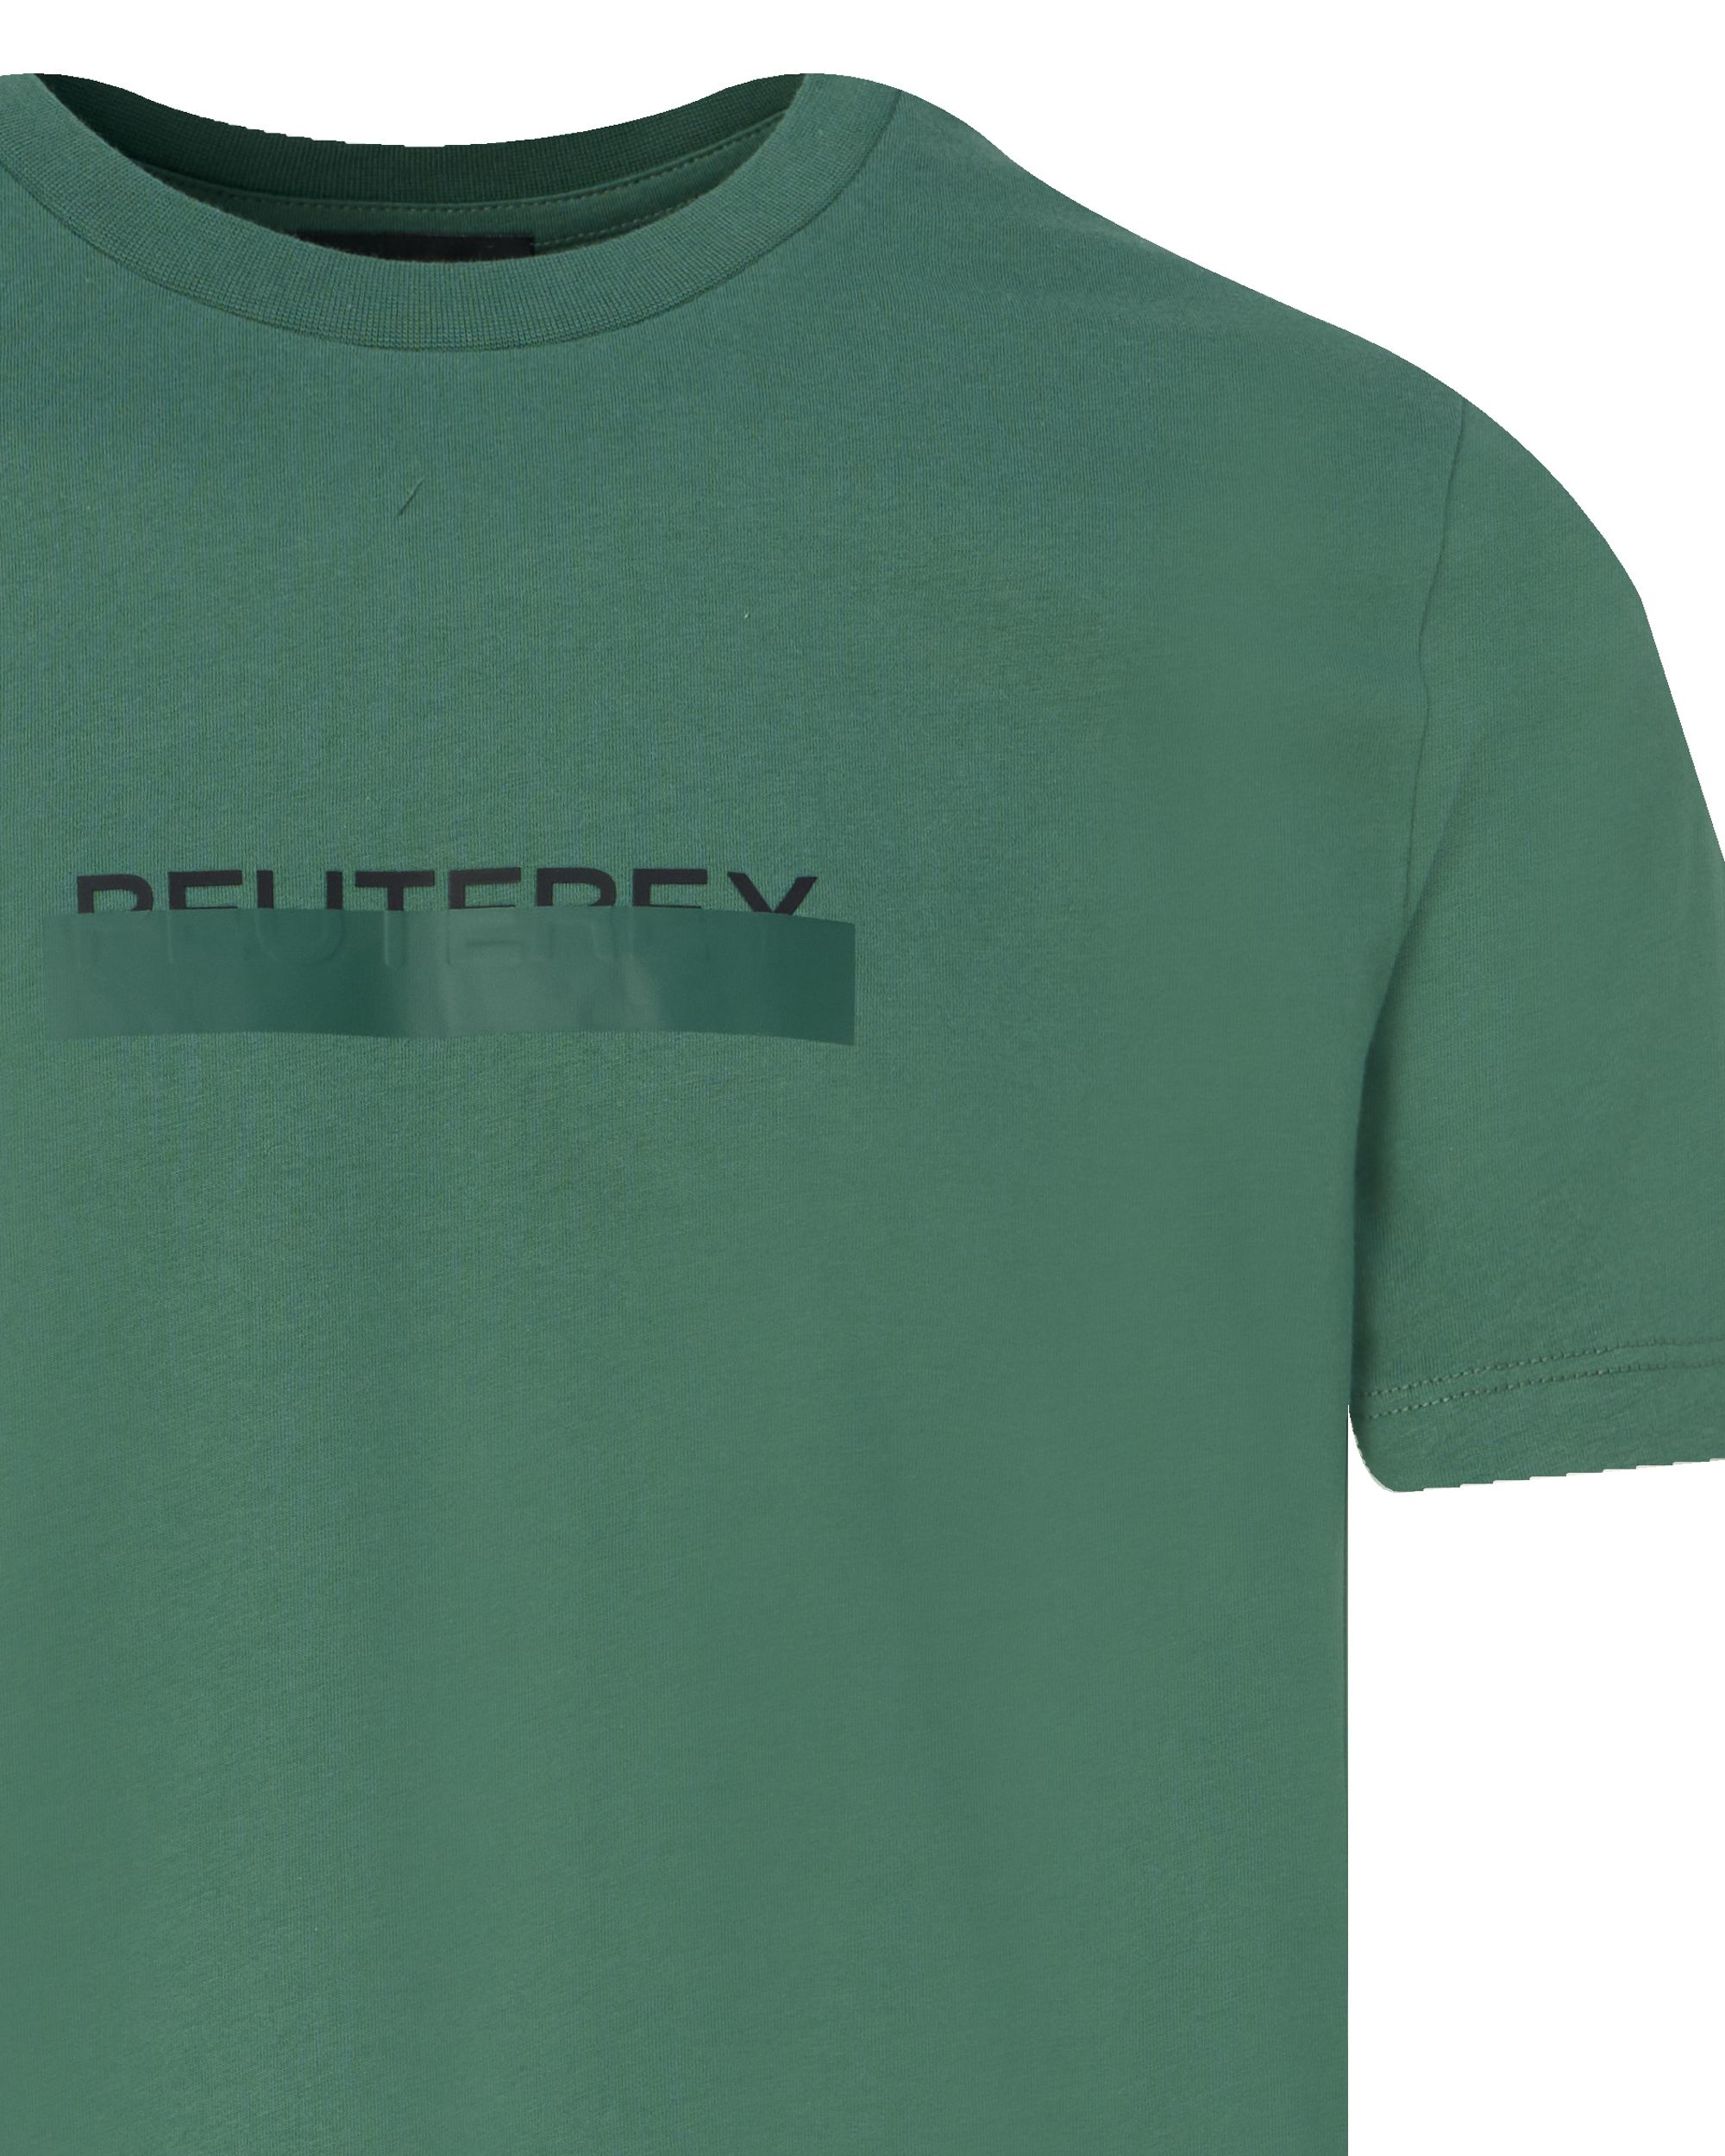 Peuterey Manderly T-shirt KM Groen 094275-001-L